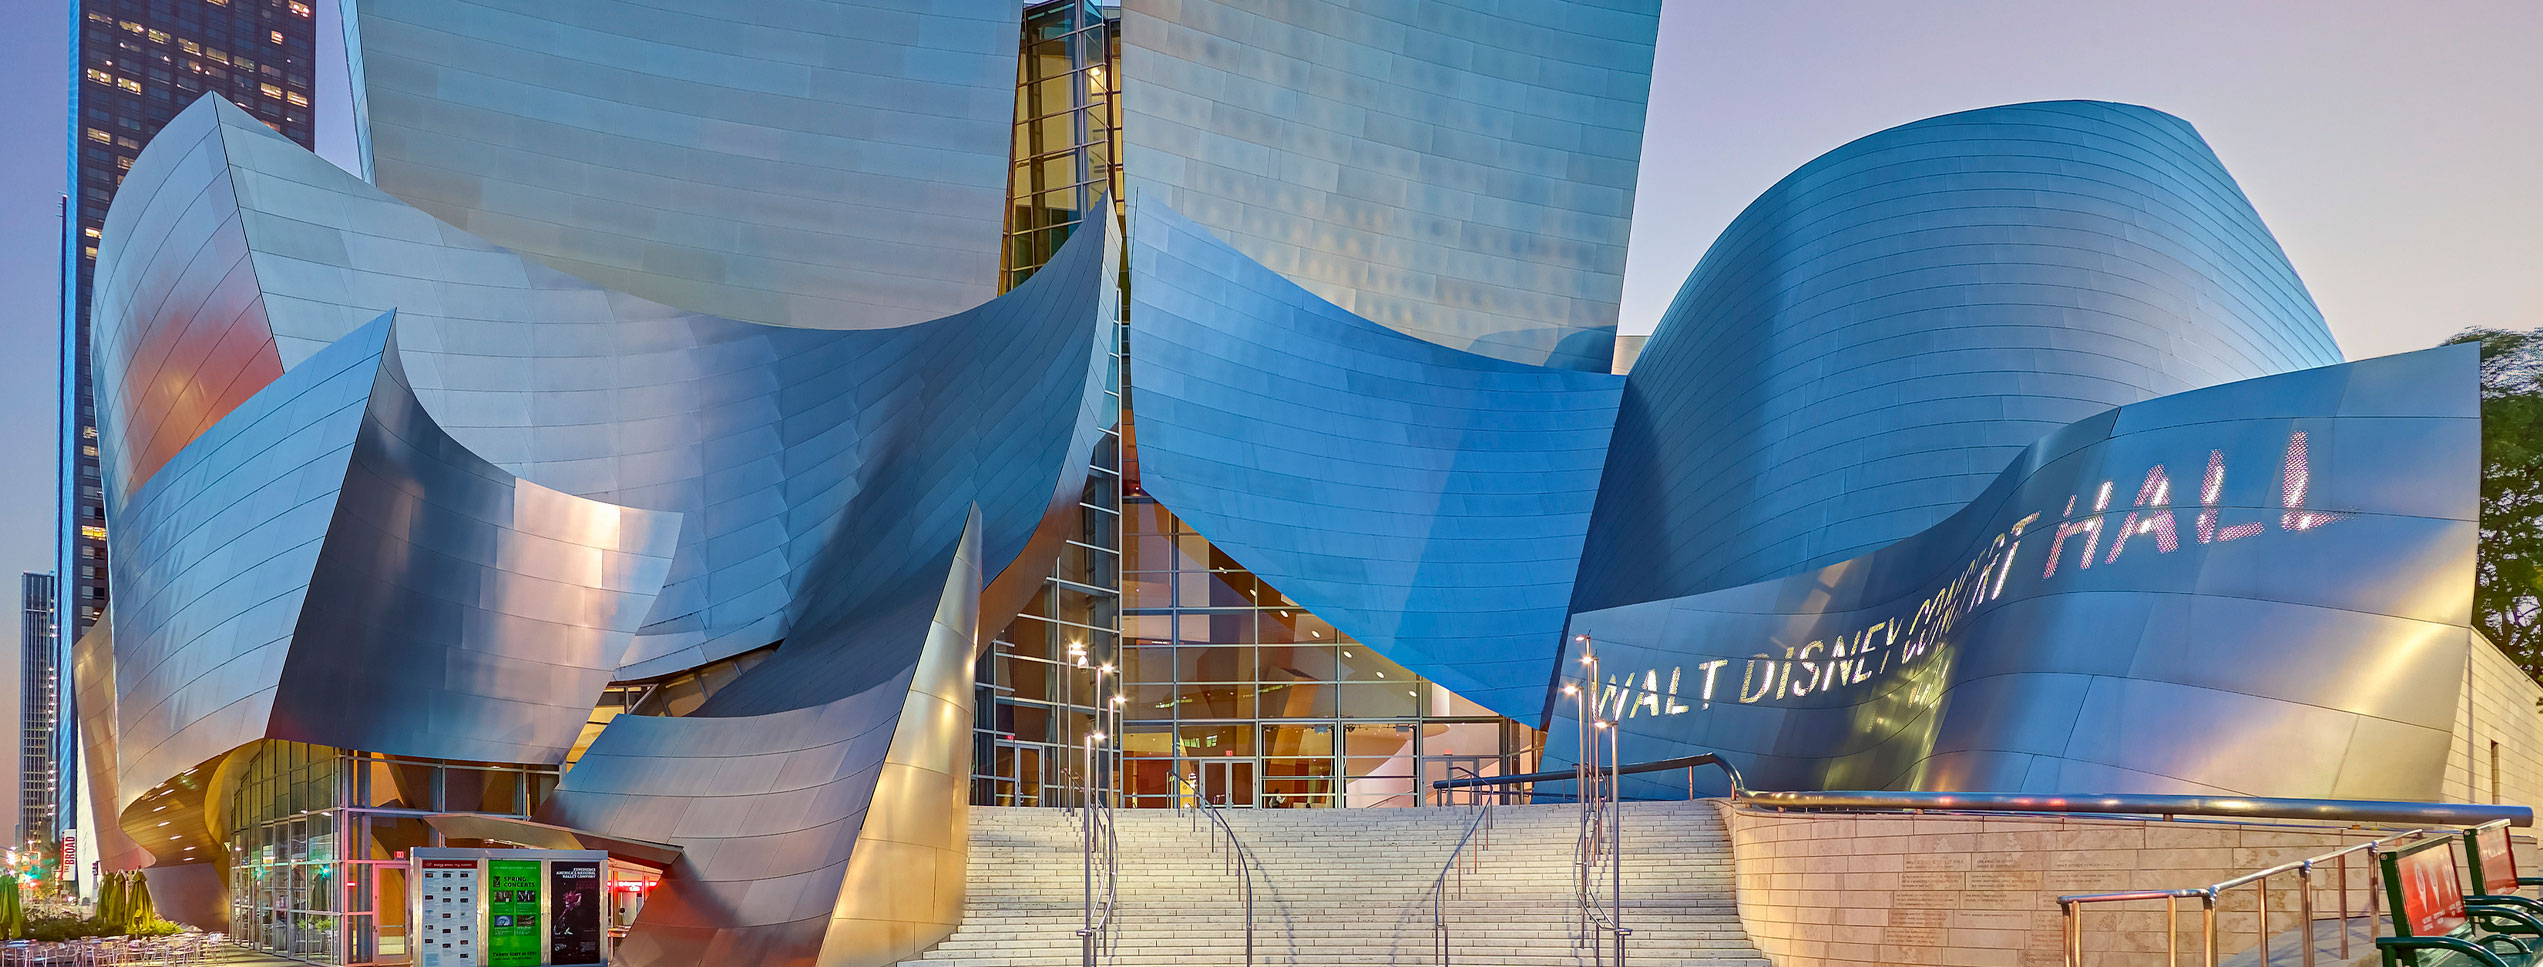 Walt Disney Concert Hall 3D model - Architecture on 3DModels